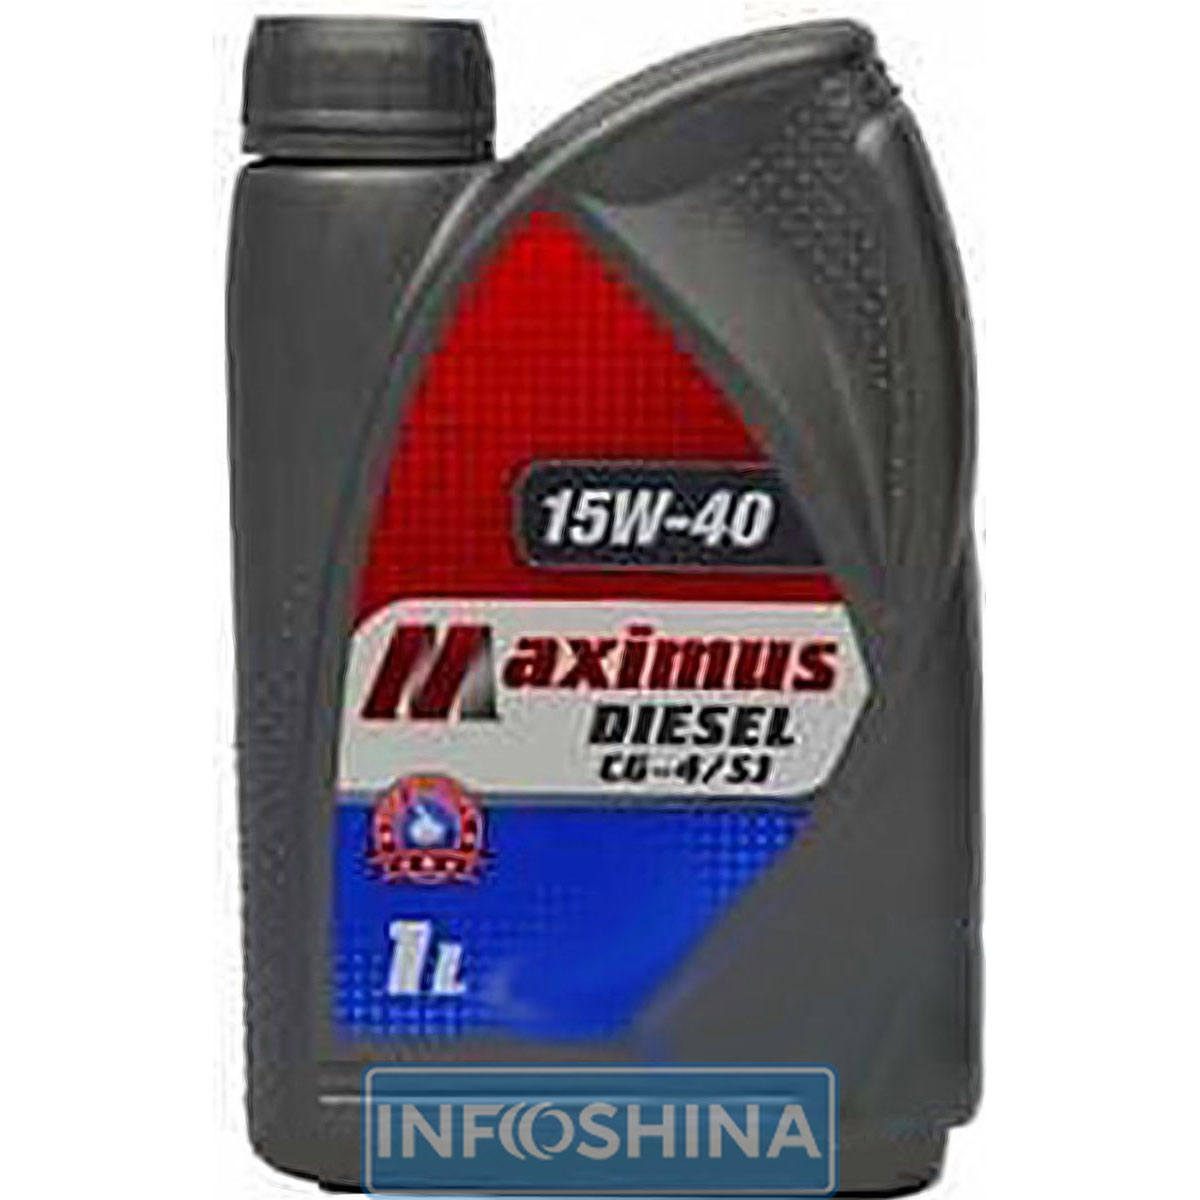 Купити масло Maximus Diesel CG-4/SJ 15W-40 (1л)